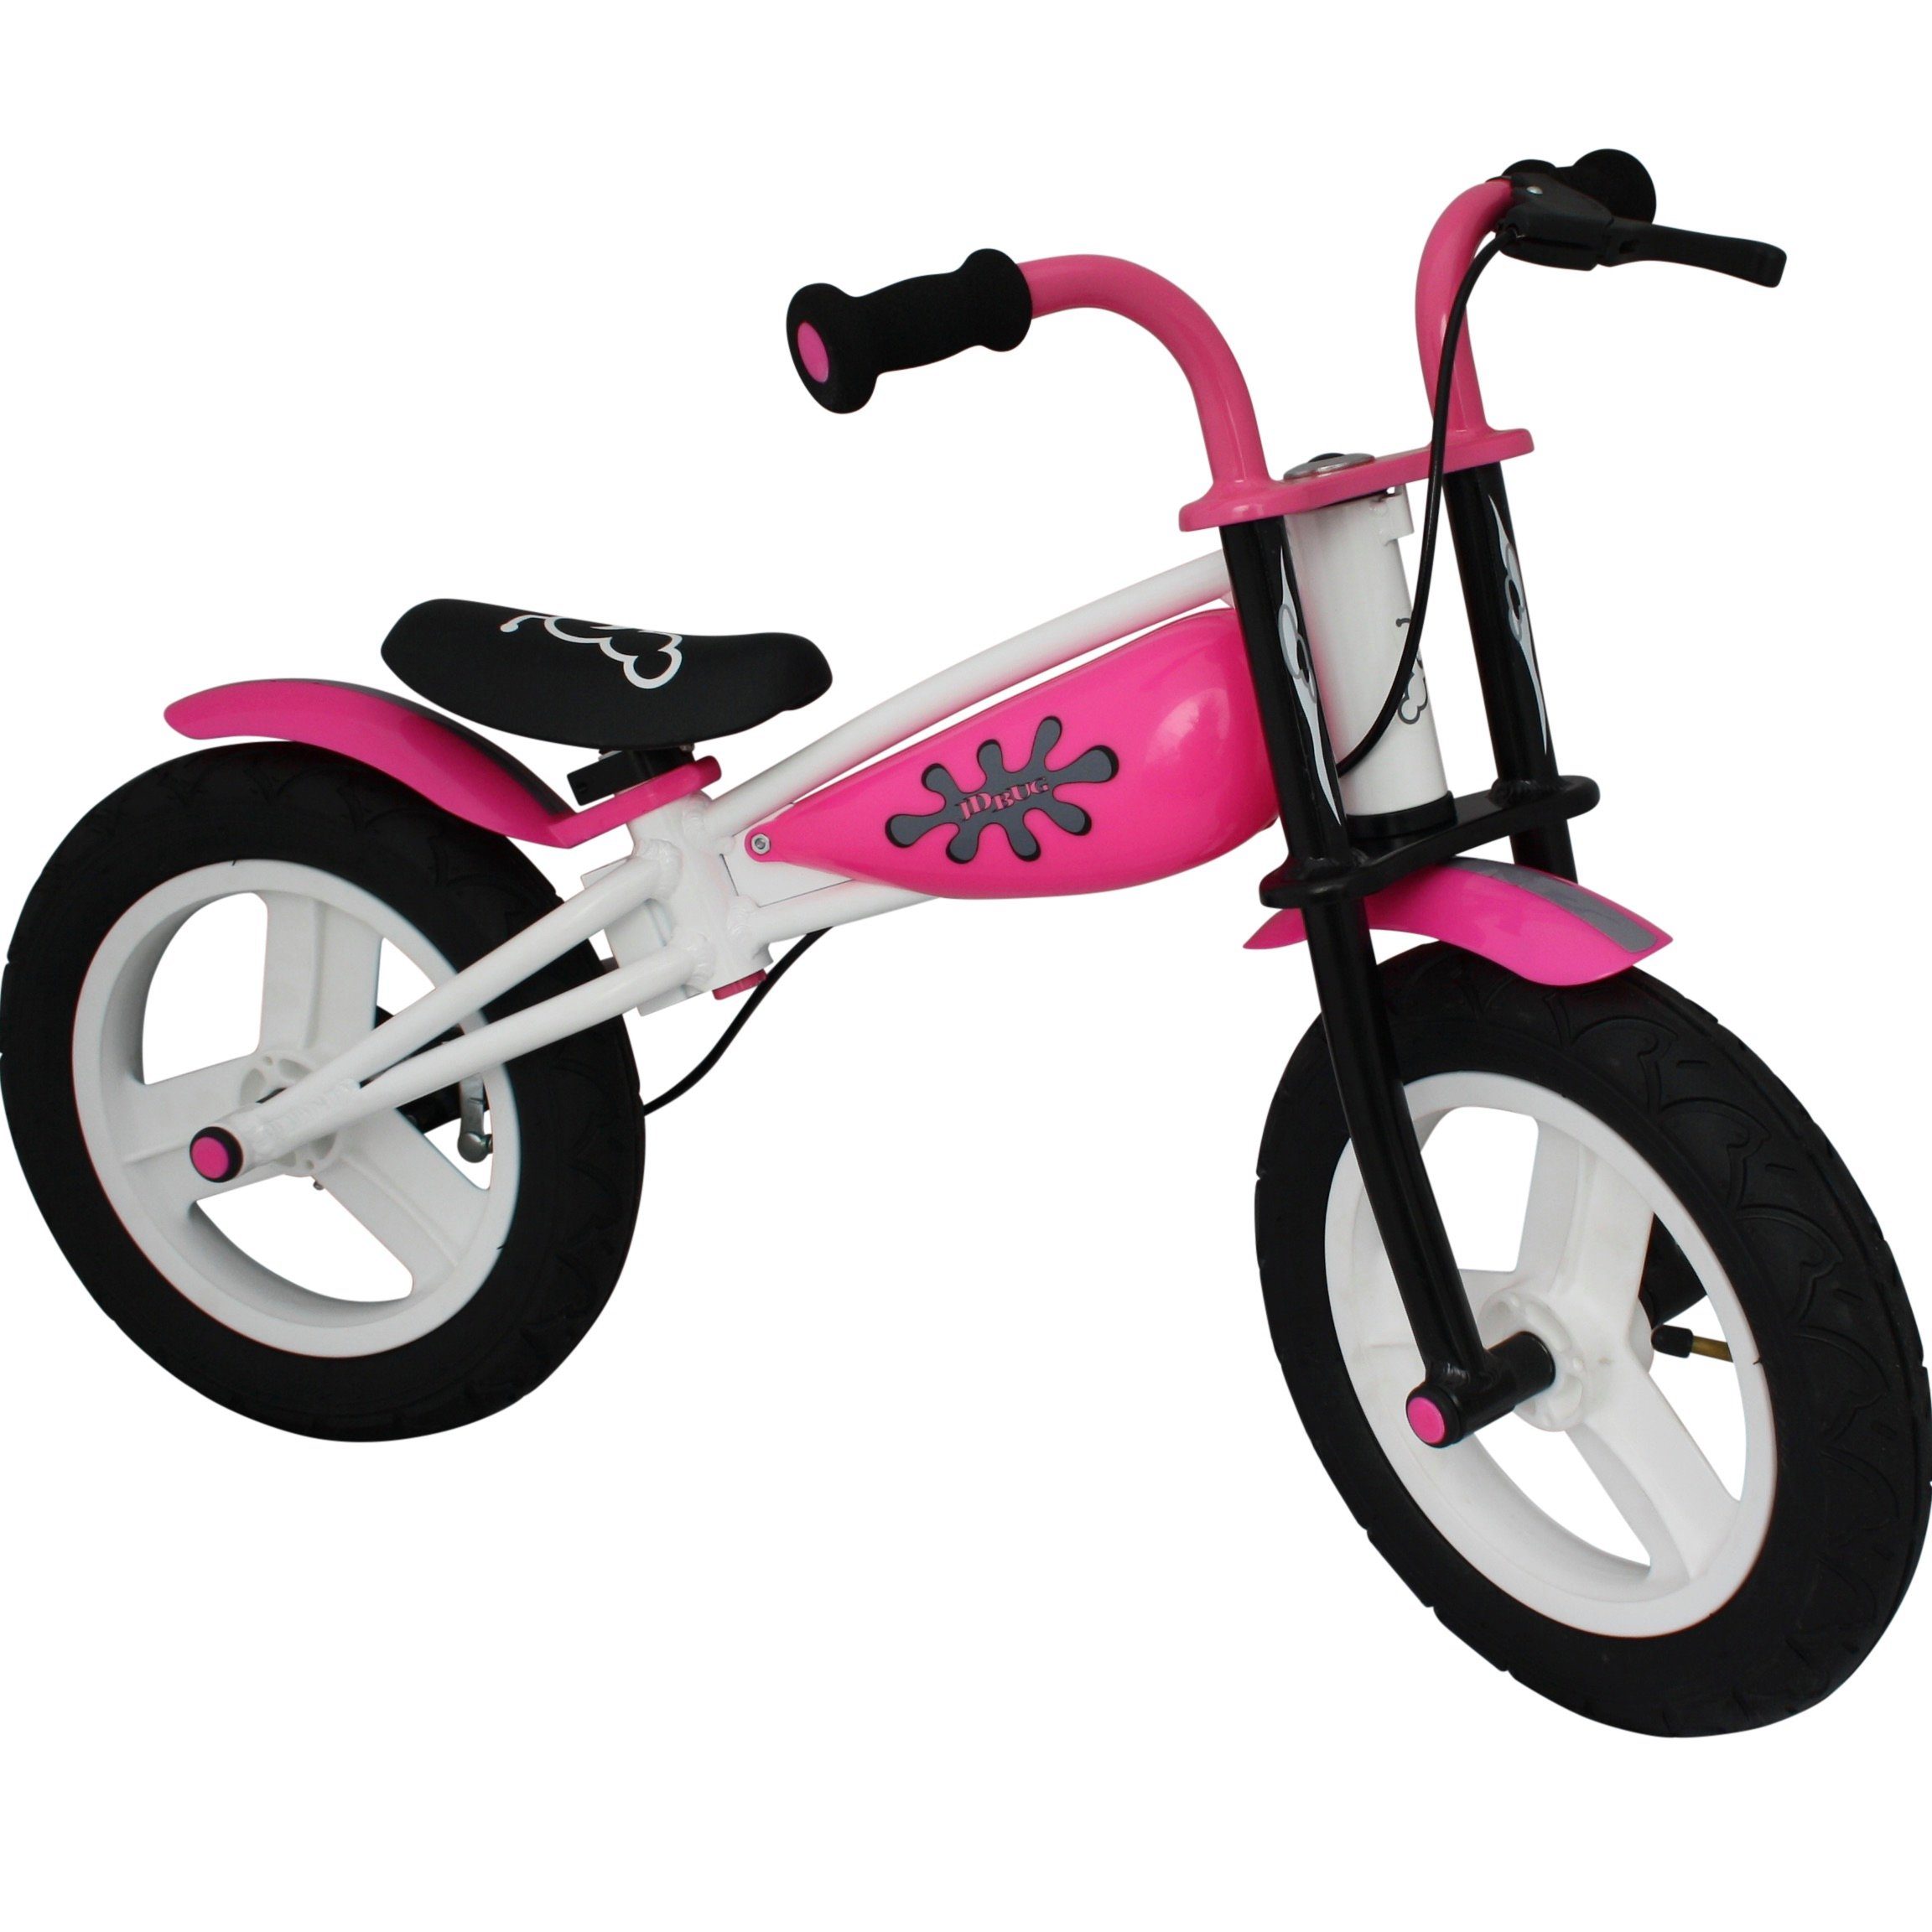 Bachtenkirch Laufrad »Kinderlaufrad Pink« 12 Zoll, Für Kinder ab 3 Jahre